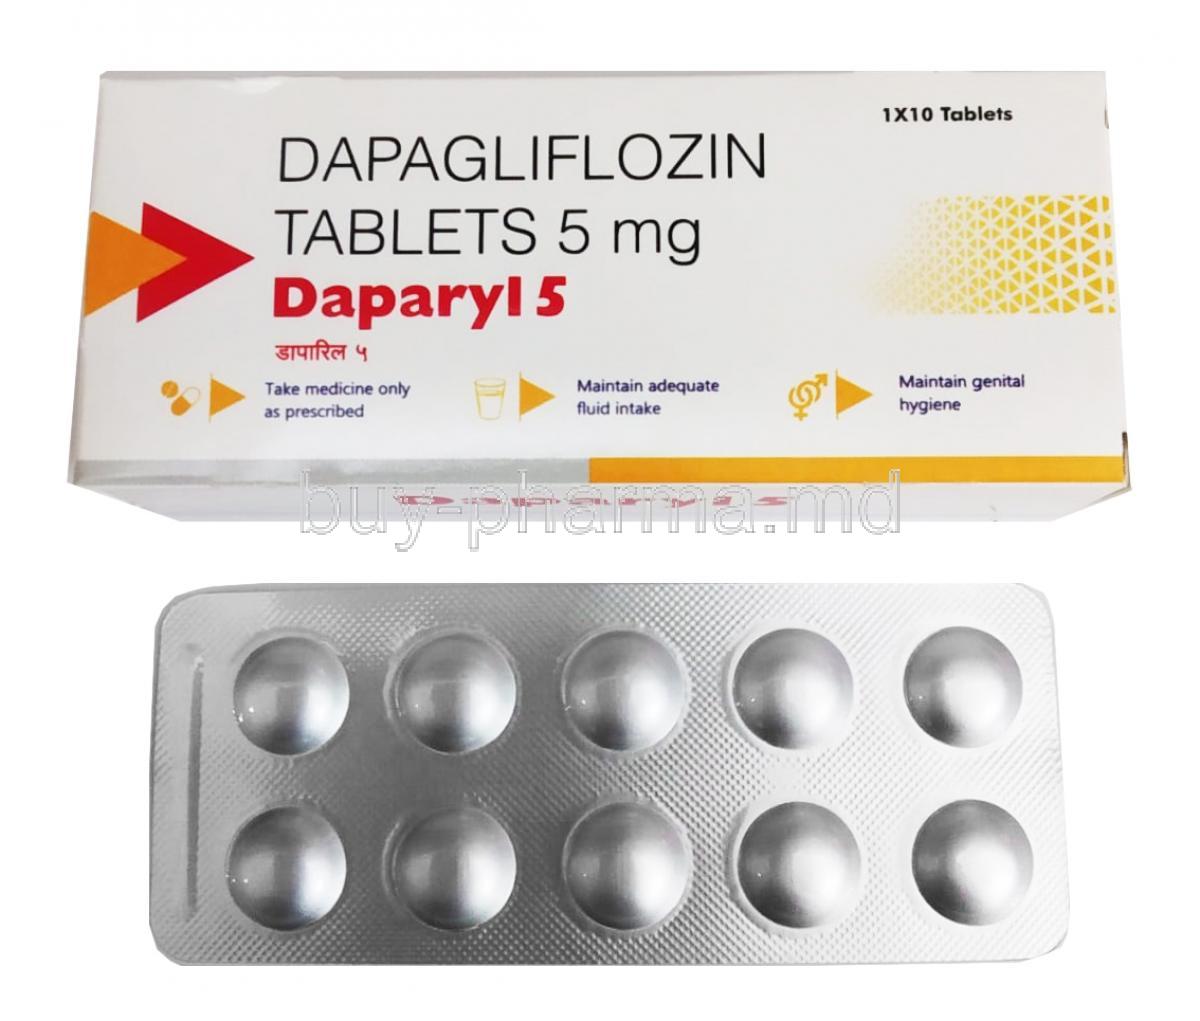 Daparyl, Dapagliflozin 5mg box and tablet